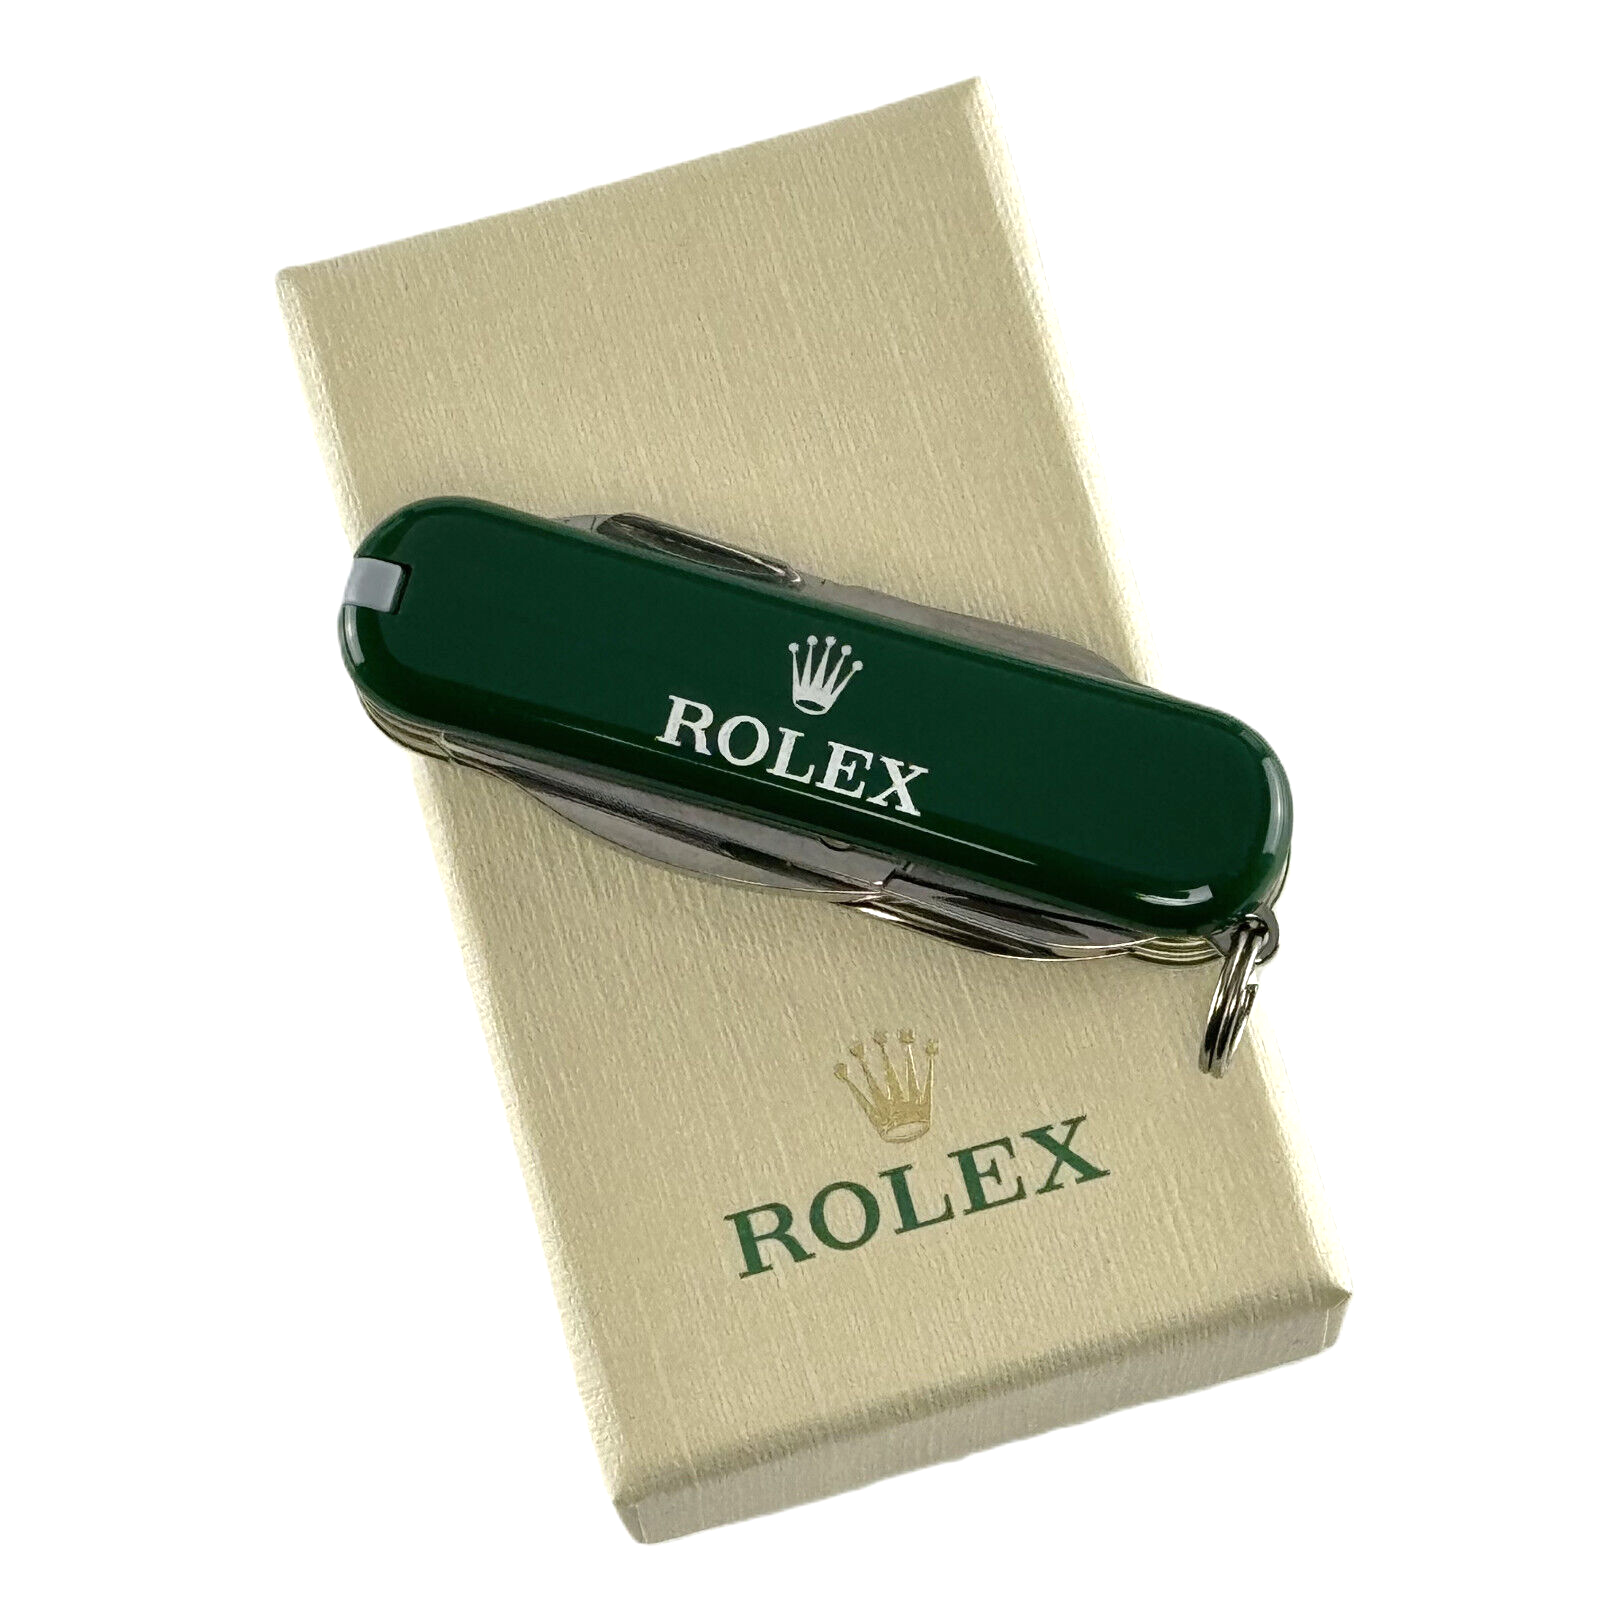  Rolex Victorinox Taschenmesser Messer Pocket Knife + Lederetui *NEU NEW*